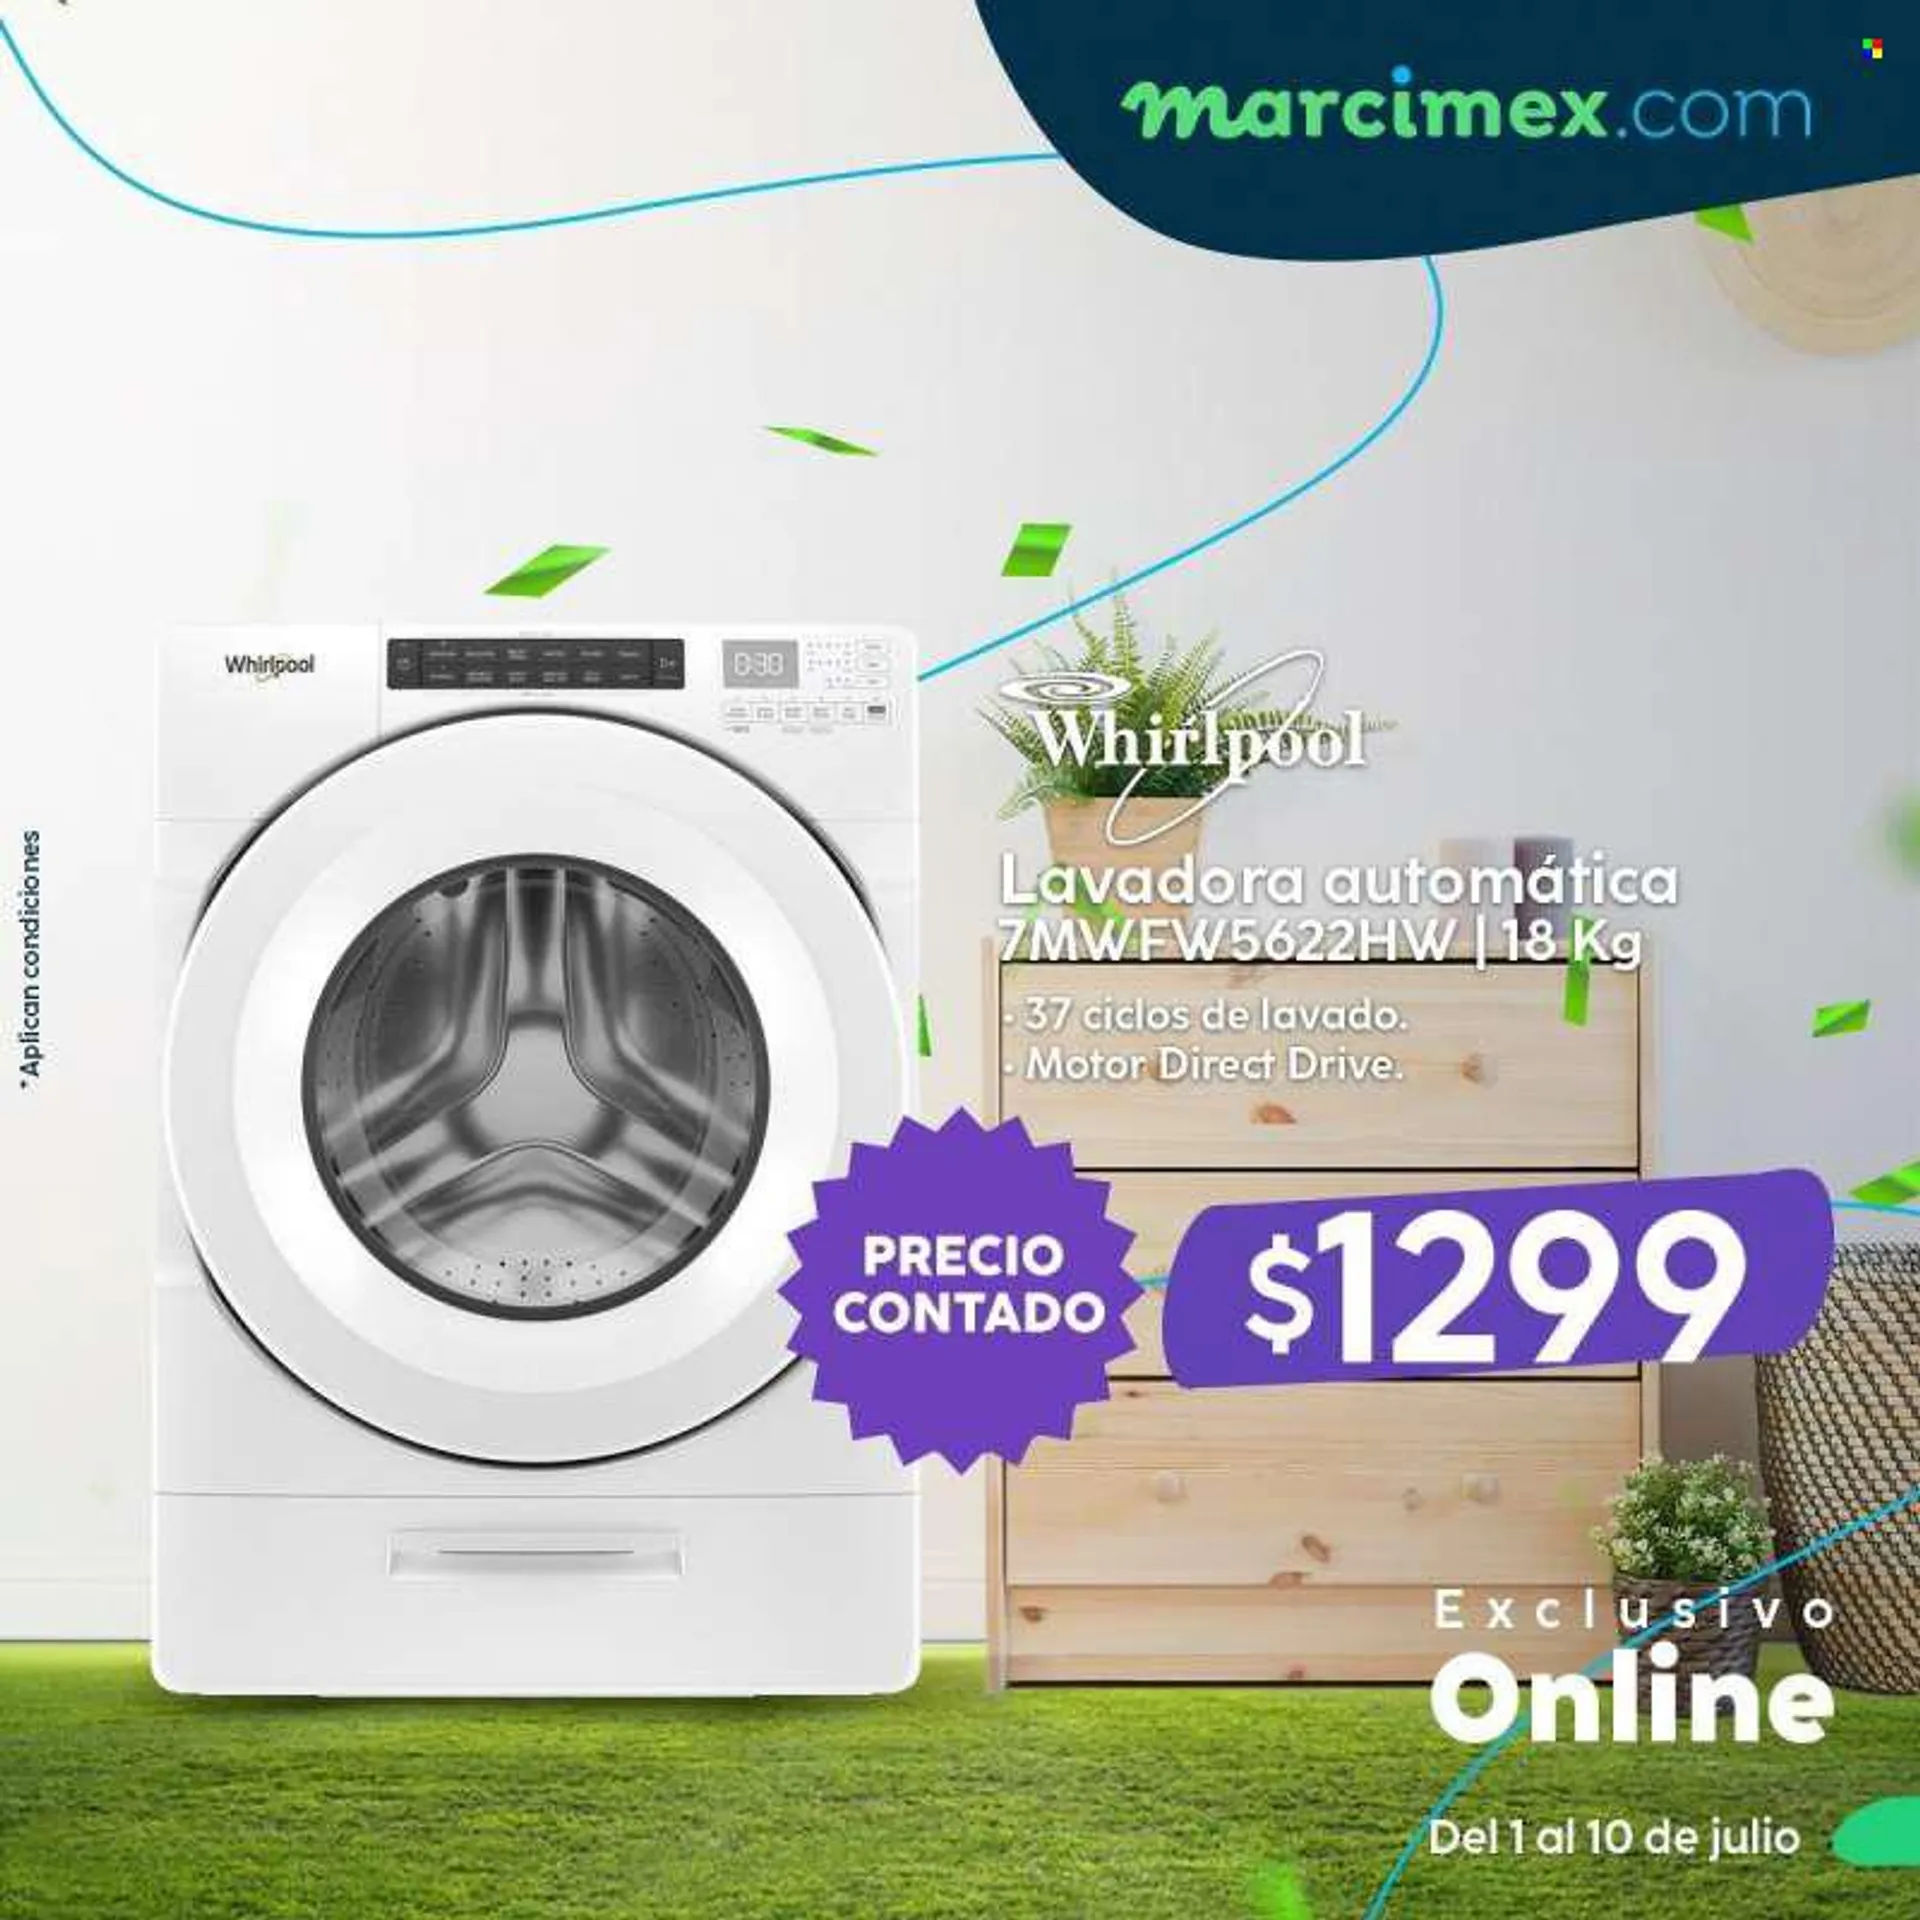 Folleto actual Marcimex - Ventas - Whirlpool, lavadora. Página 4.